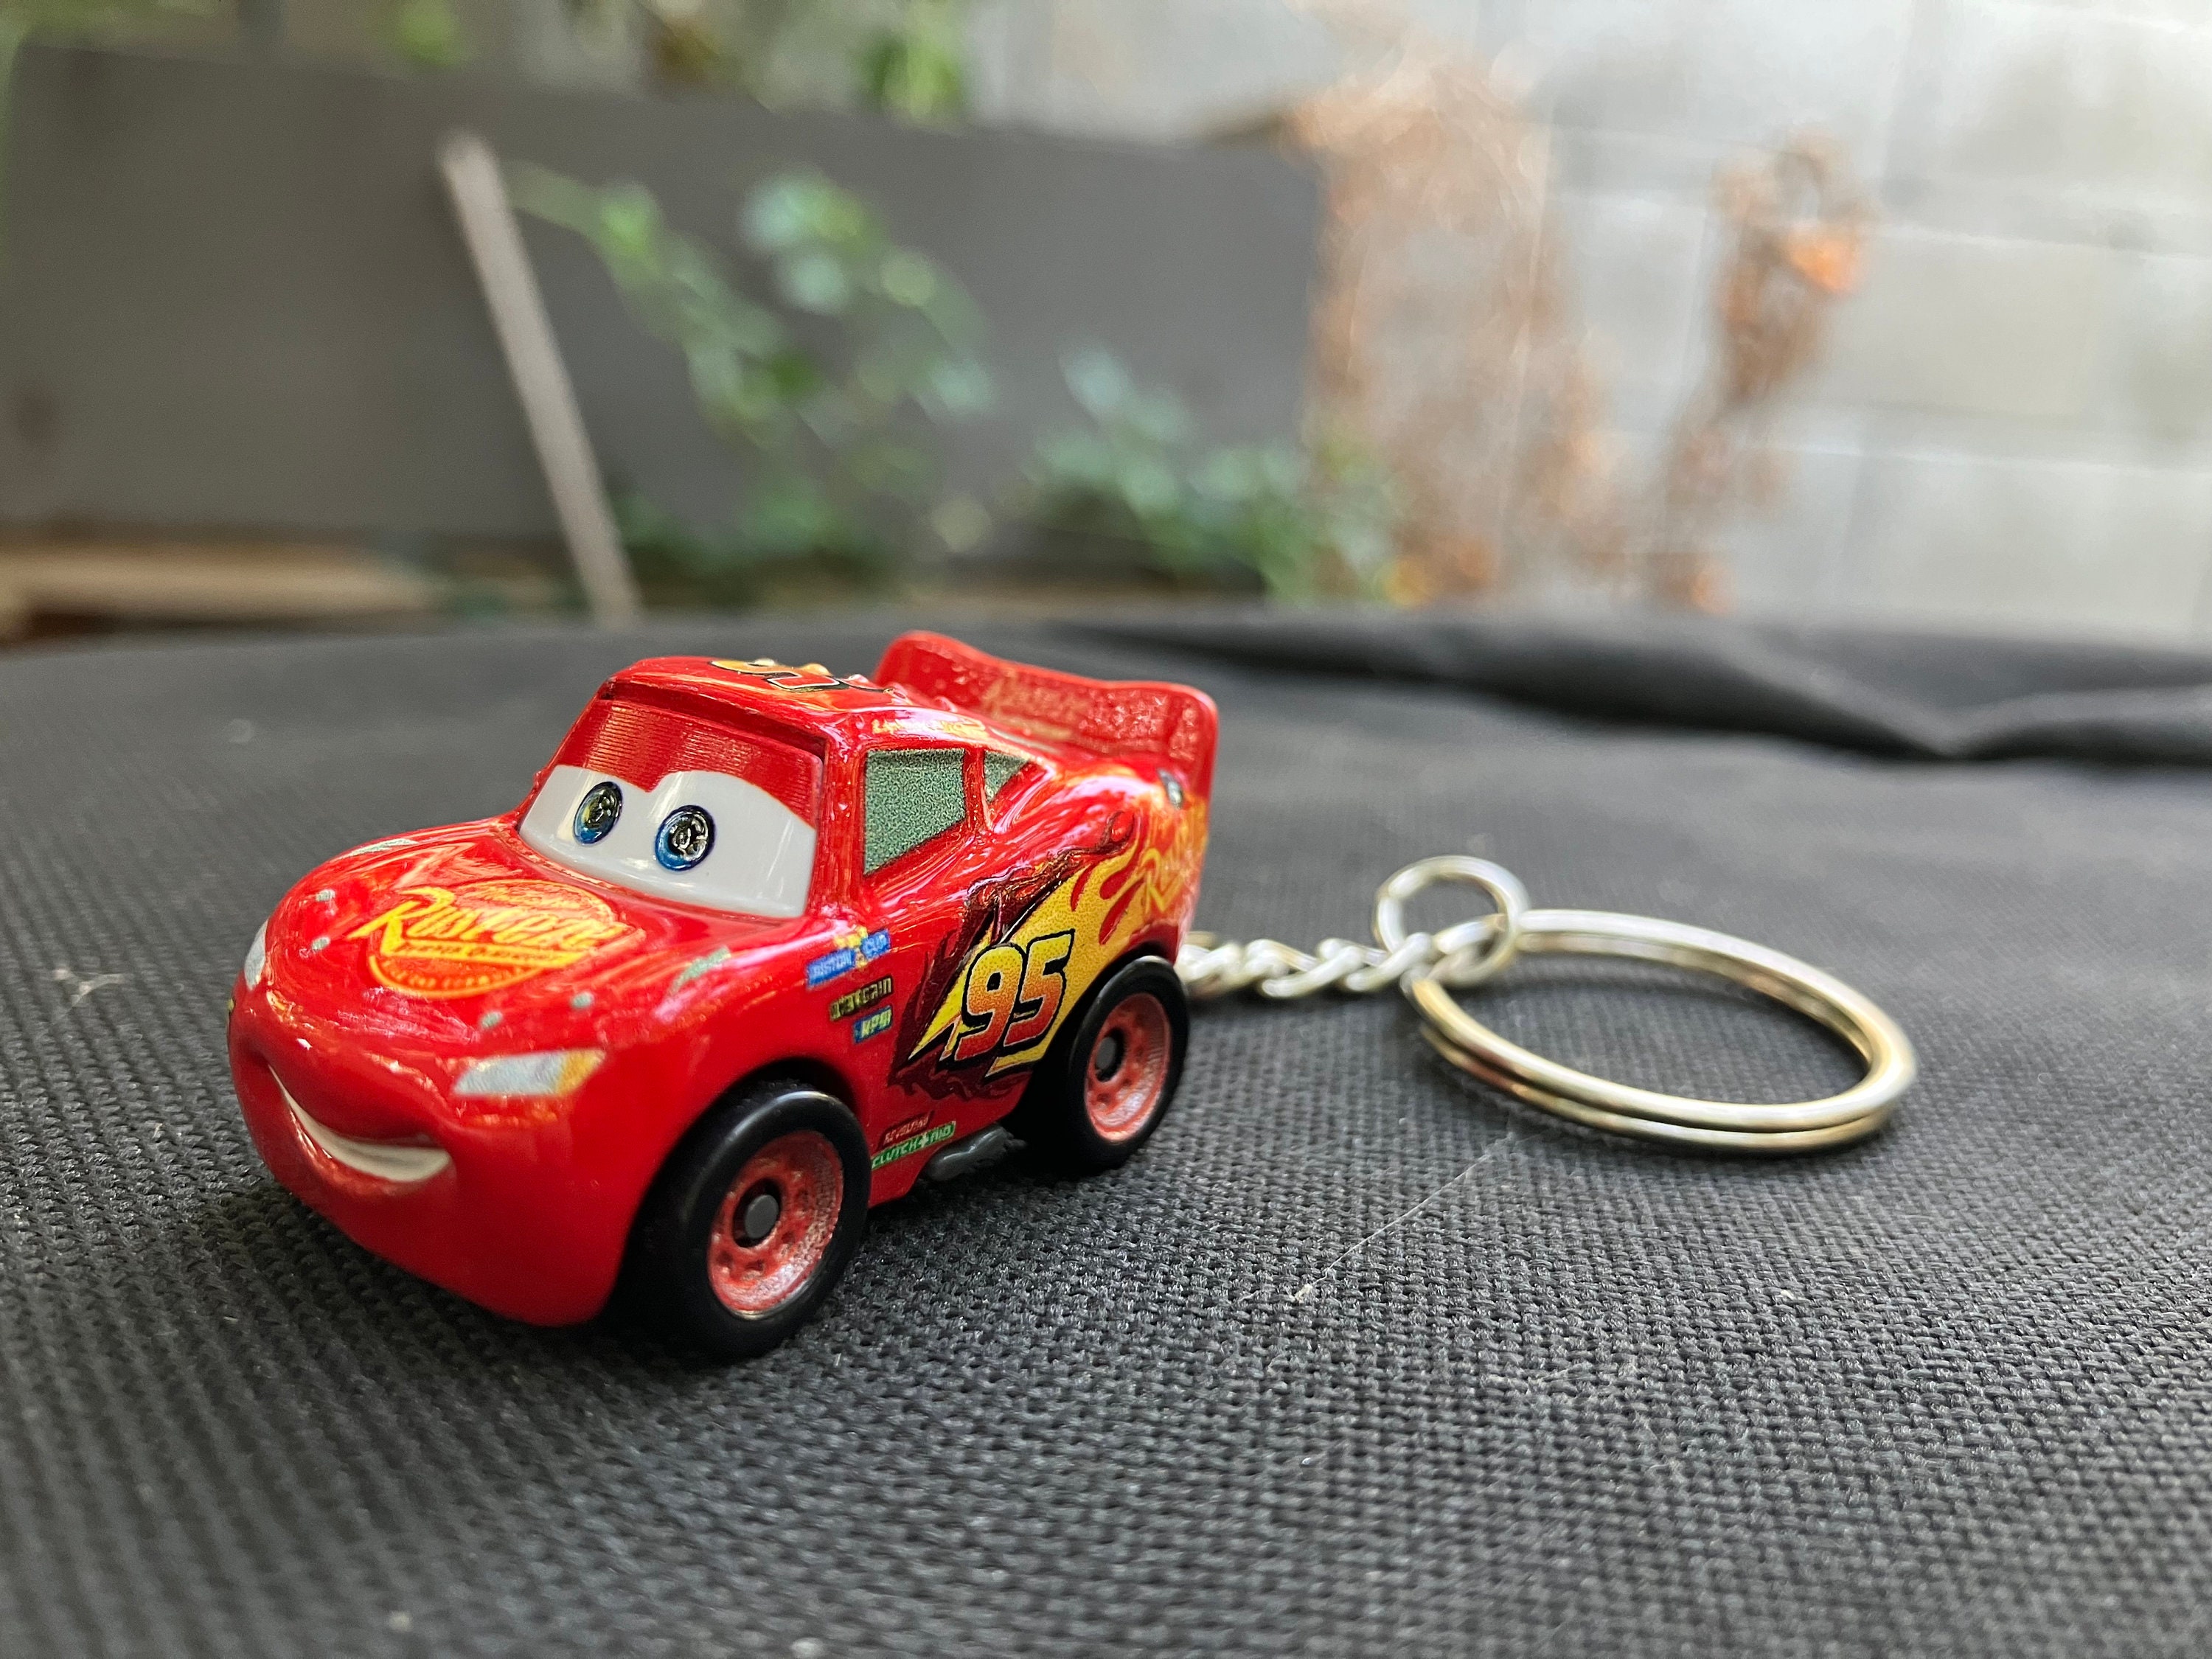 Schlüsselanhänger Cars mit Lightning McQueen Motiven auf der